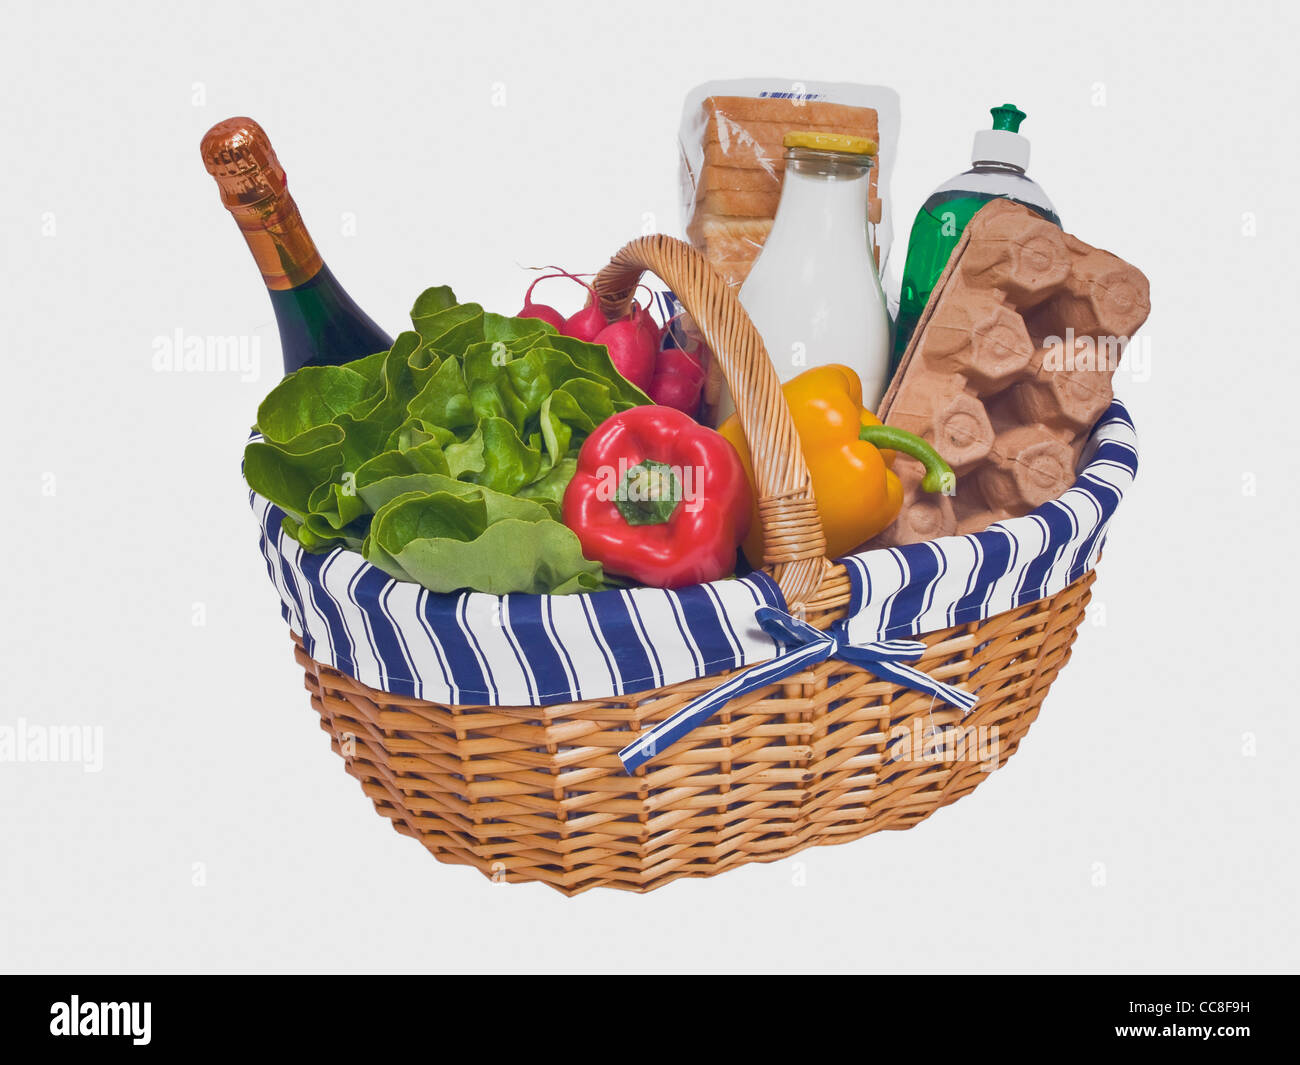 Detailansicht eines Weidenkorbes mit verschiedenen Lebensmitteln | Detail photo of a wicker basket, filled with foodstuffs Stock Photo